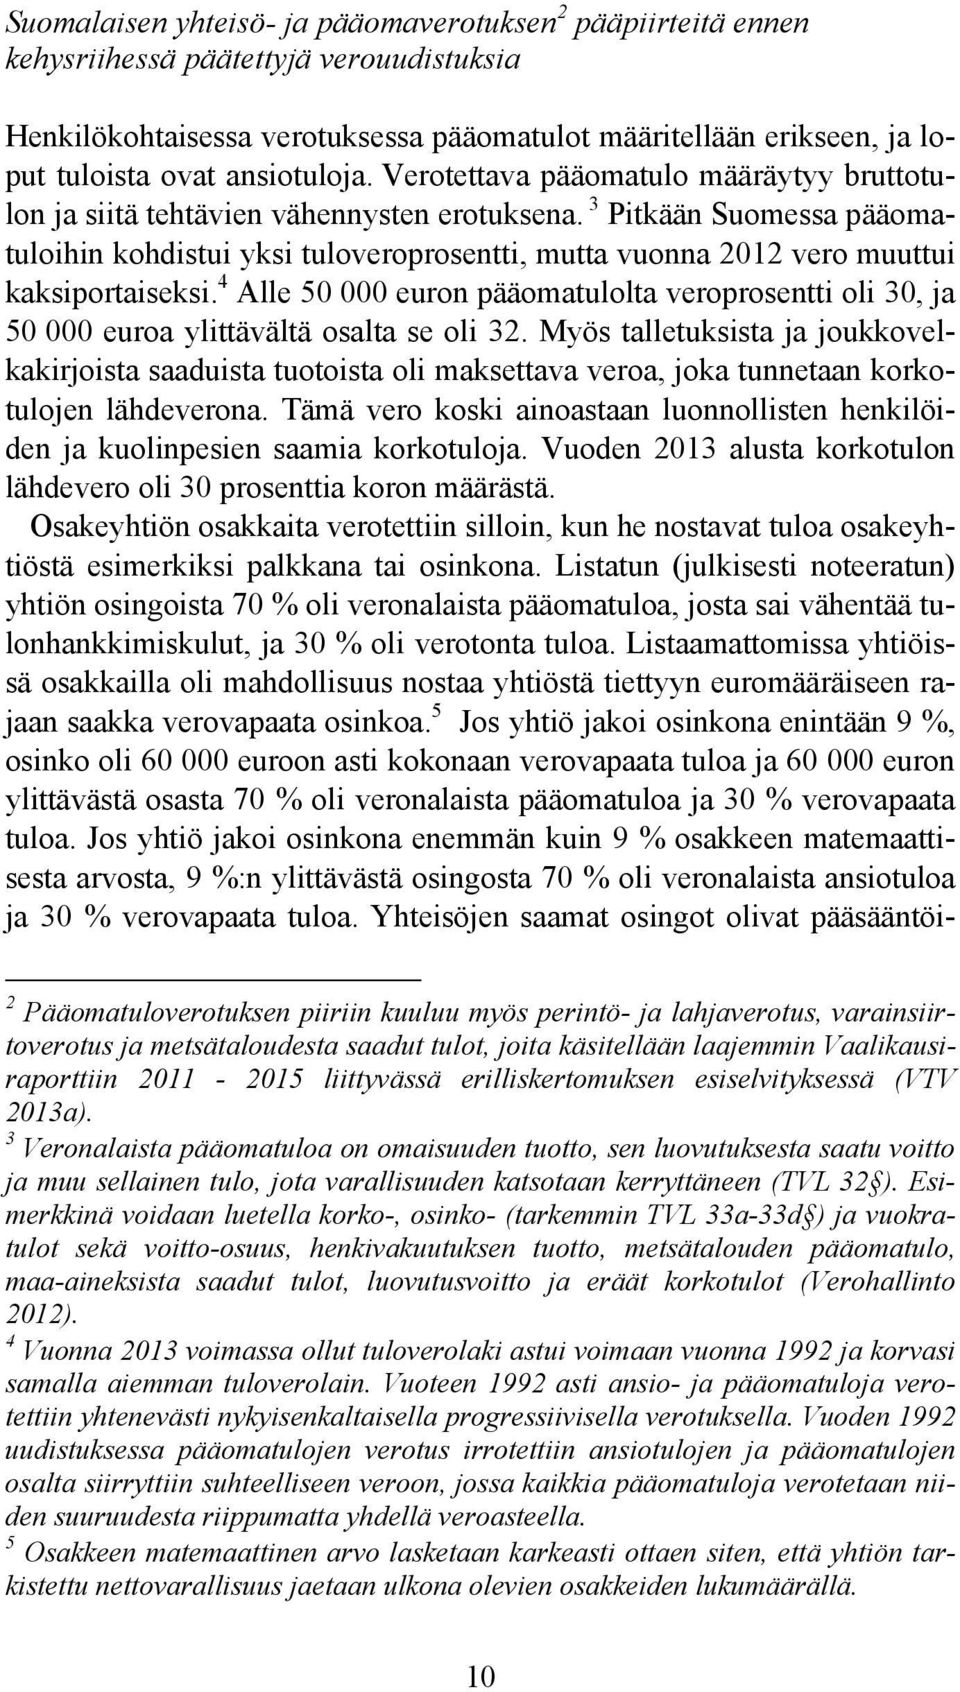 3 Pitkään Suomessa pääomatuloihin kohdistui yksi tuloveroprosentti, mutta vuonna 2012 vero muuttui kaksiportaiseksi.